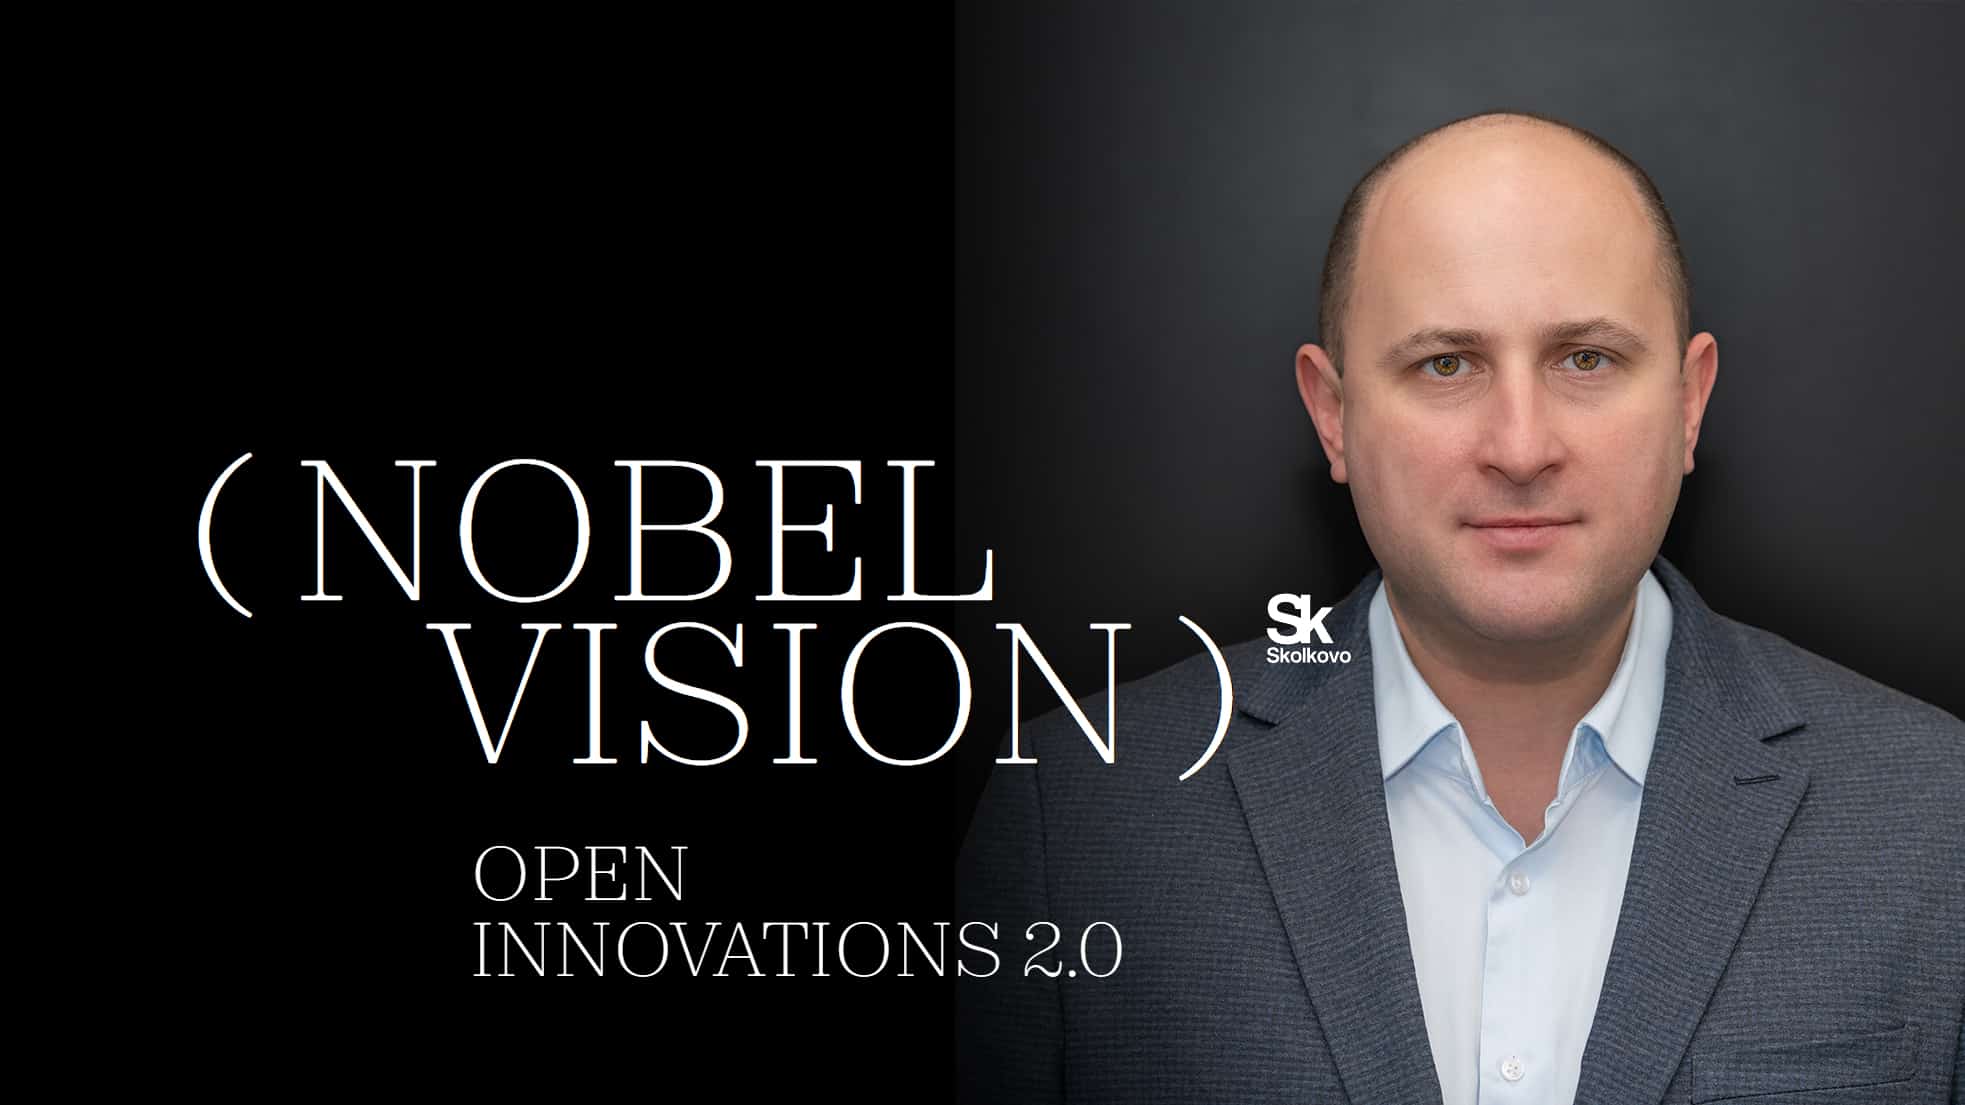 Дмитрий Лаконцев выступил как эксперт на сессии "Развитие высокотехнологичного направления «Мобильные сети пятого поколения 5G» в России" во время конференции "Nobel Vision. Open Innovation 2.0"